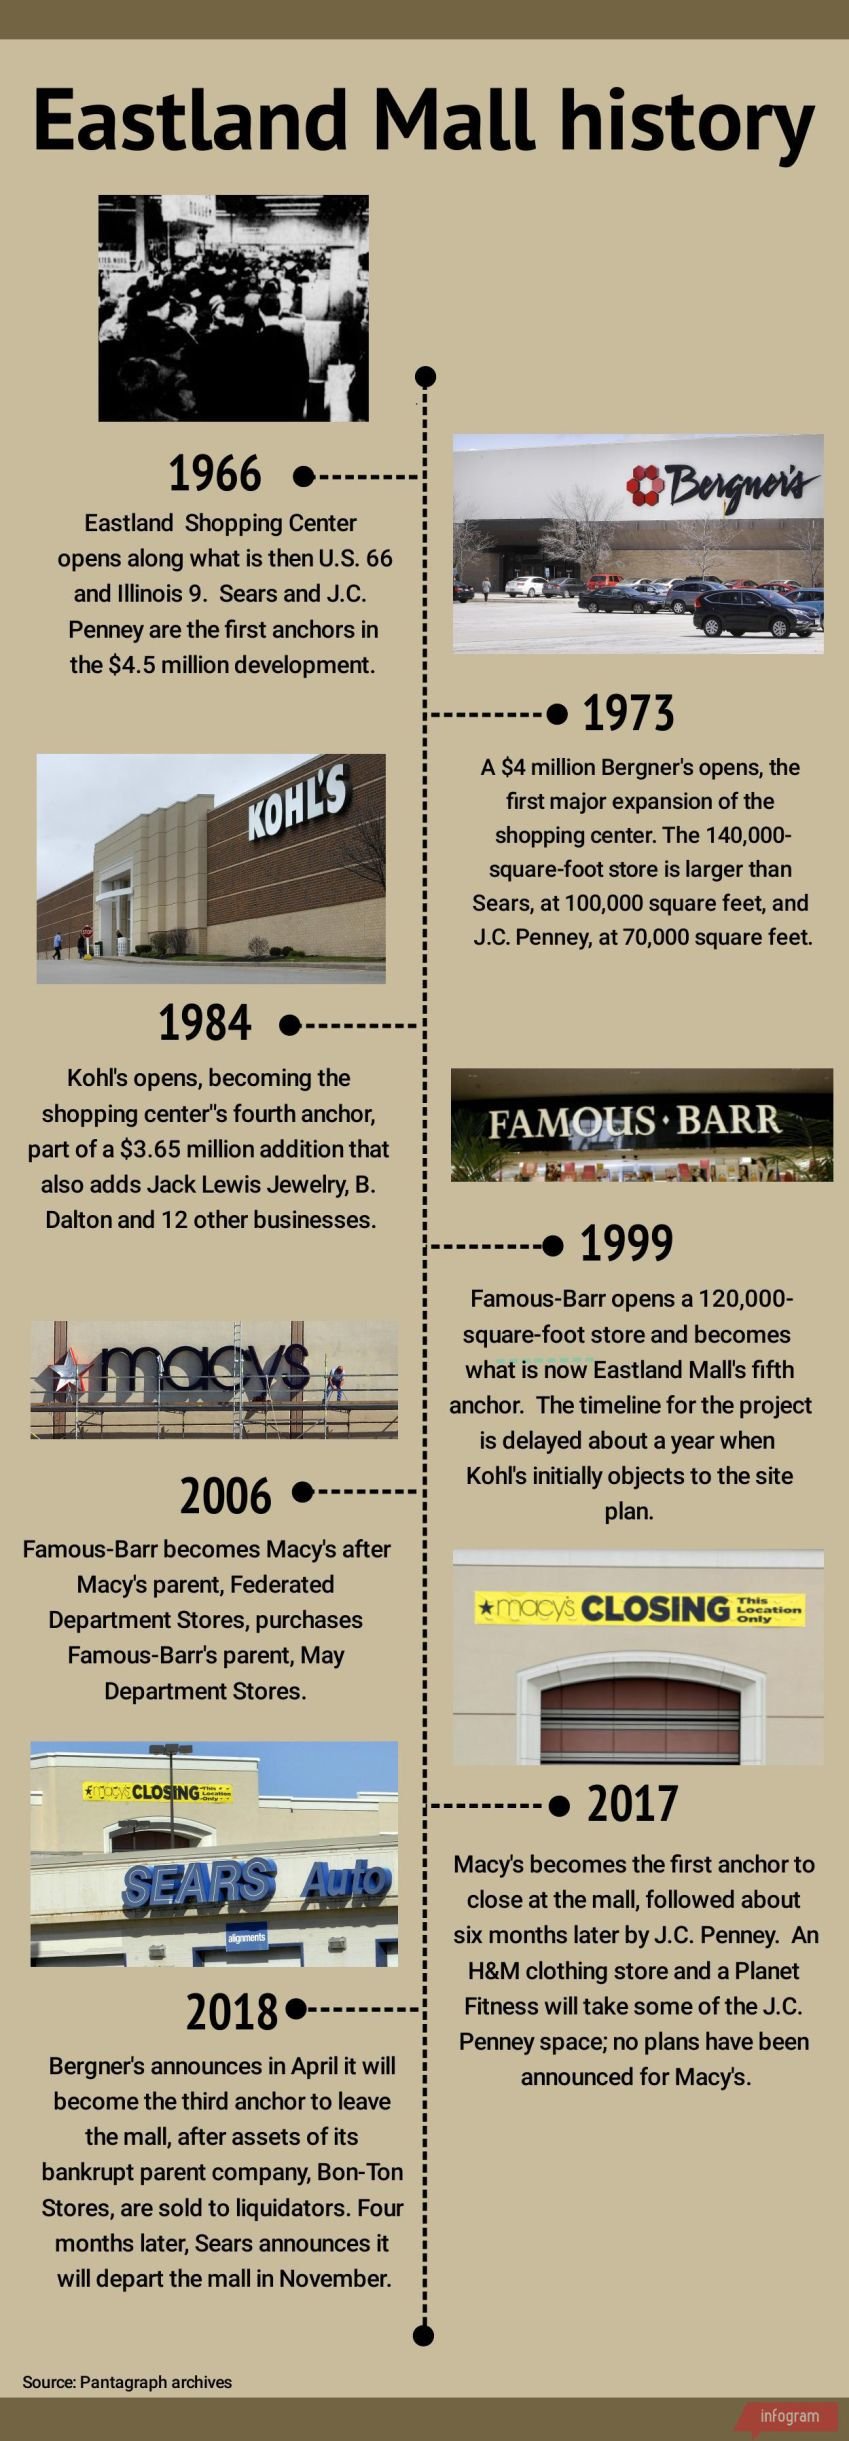 Eastland Mall timeline